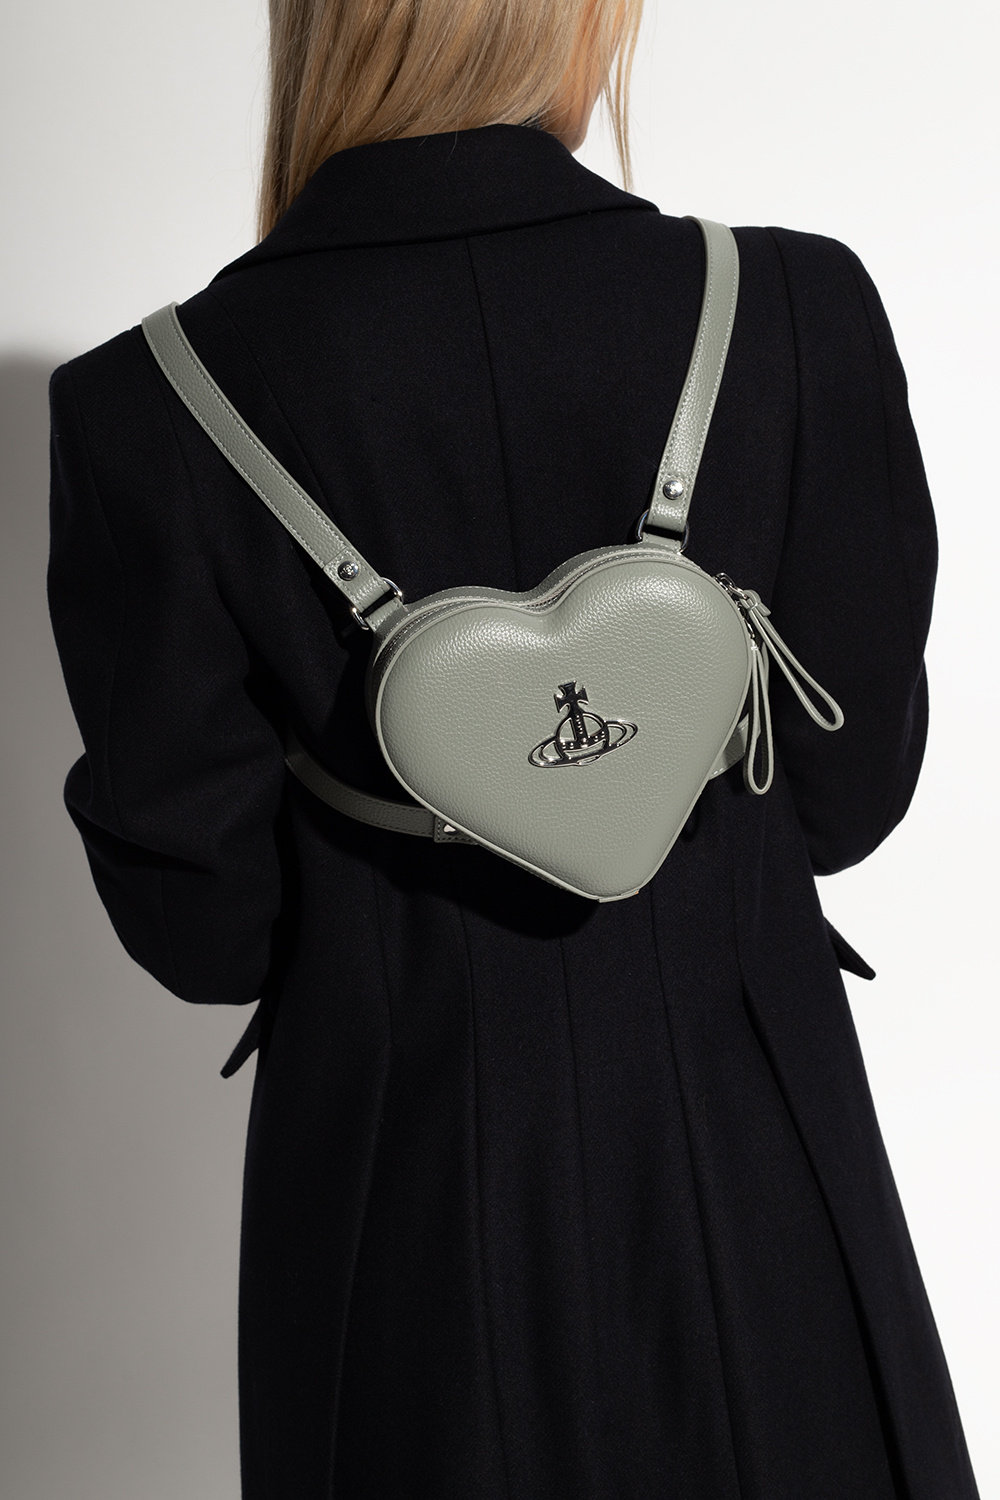 Cross body bags Vivienne Westwood - Johanna Heart crossbody bag in